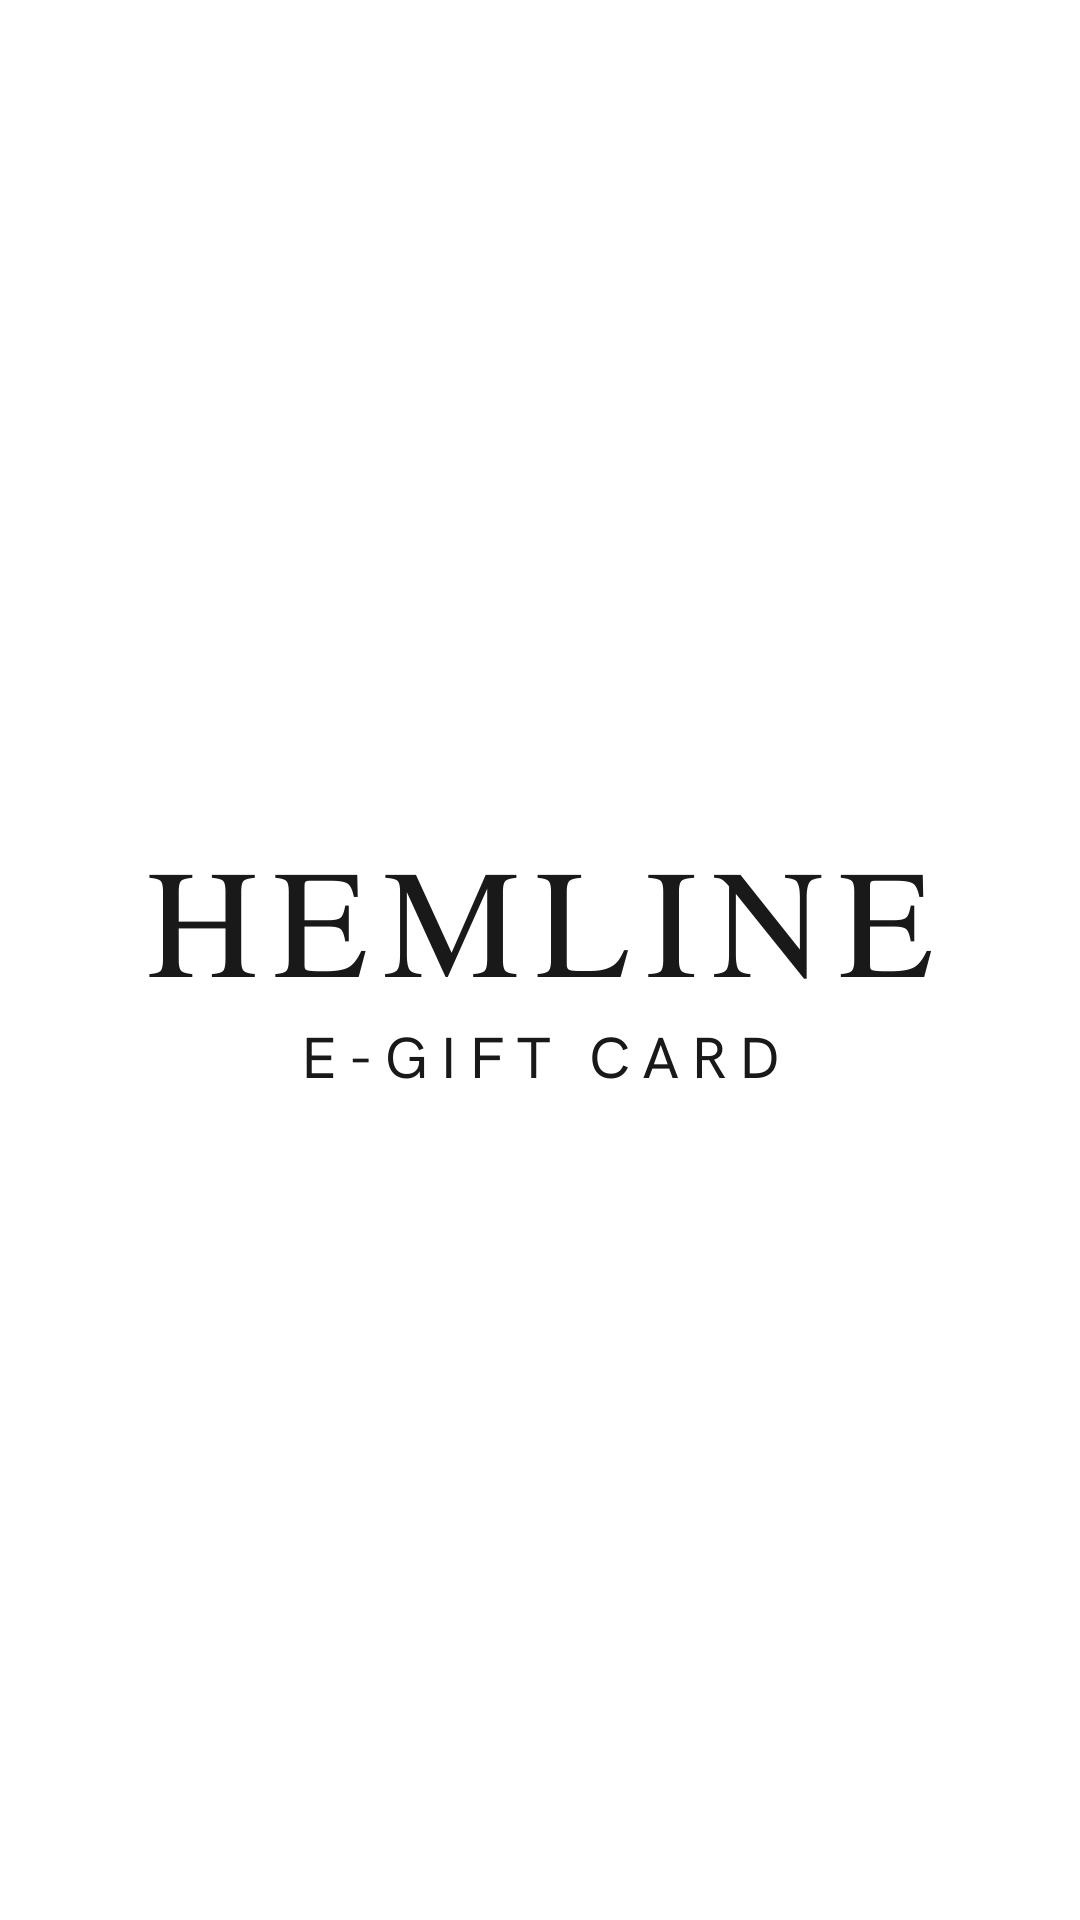 Hemline Mobile E-Gift Card